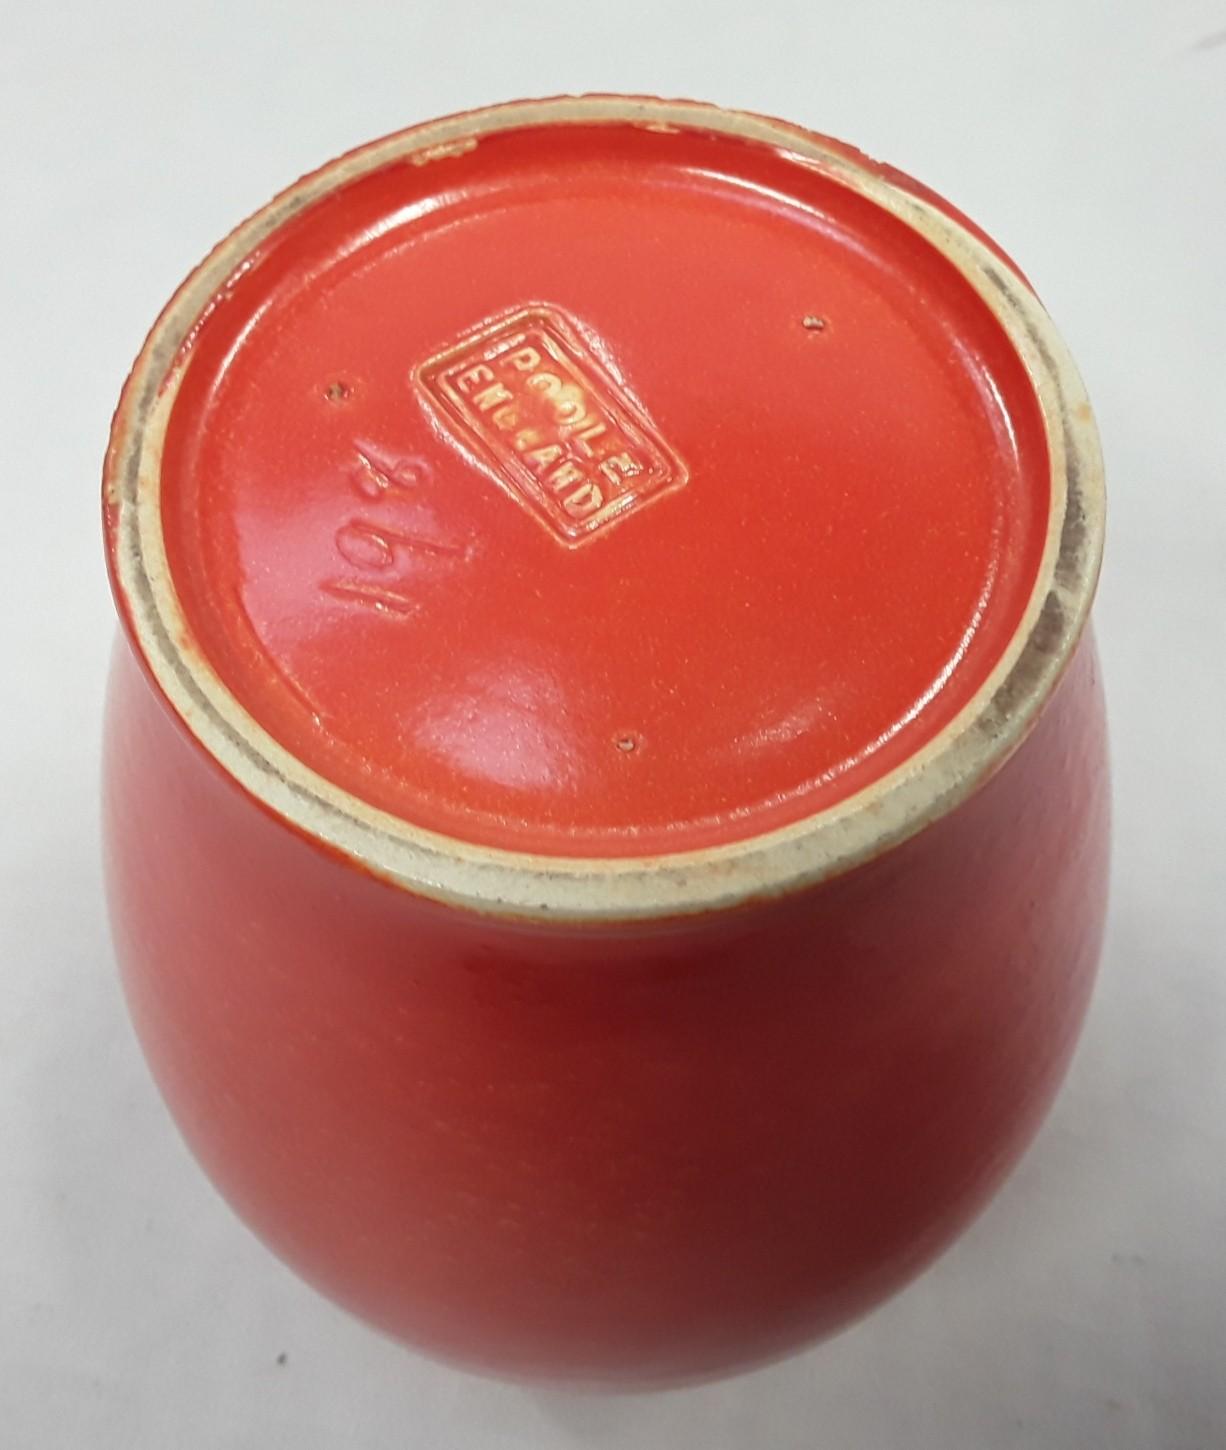 Poole Pottery shape 198 orange uranium glaze vase 5.8" high. - Image 3 of 3